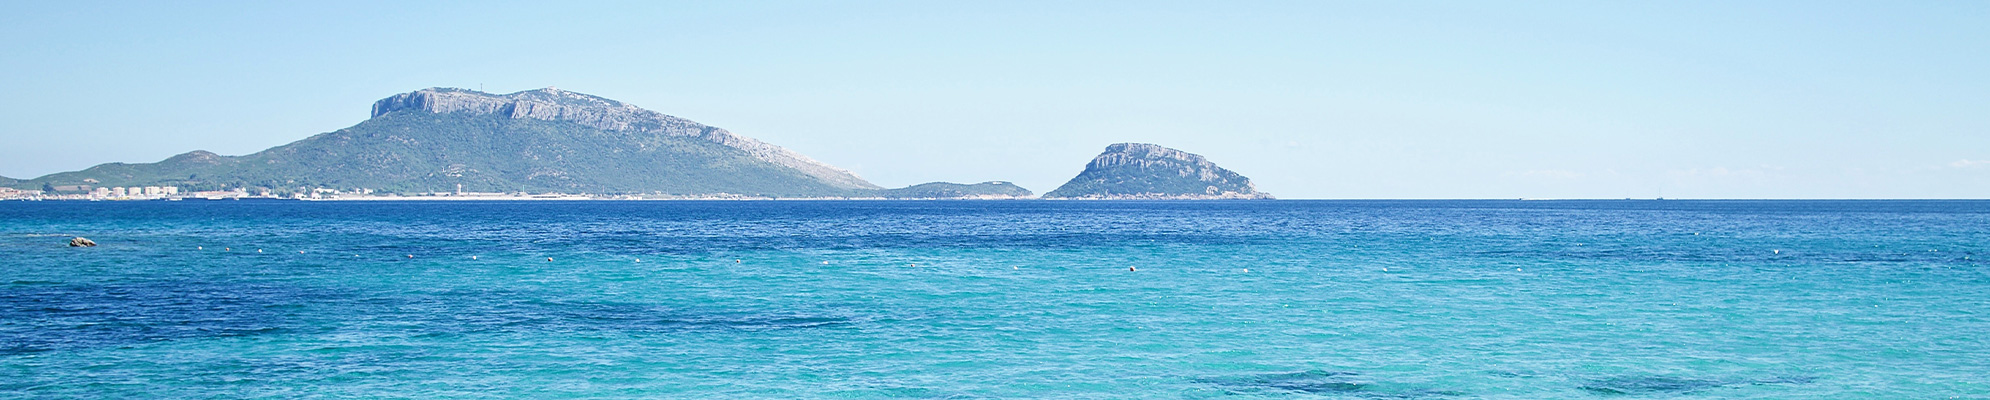 Vista sul mare Adriatico e sulle isole al largo 